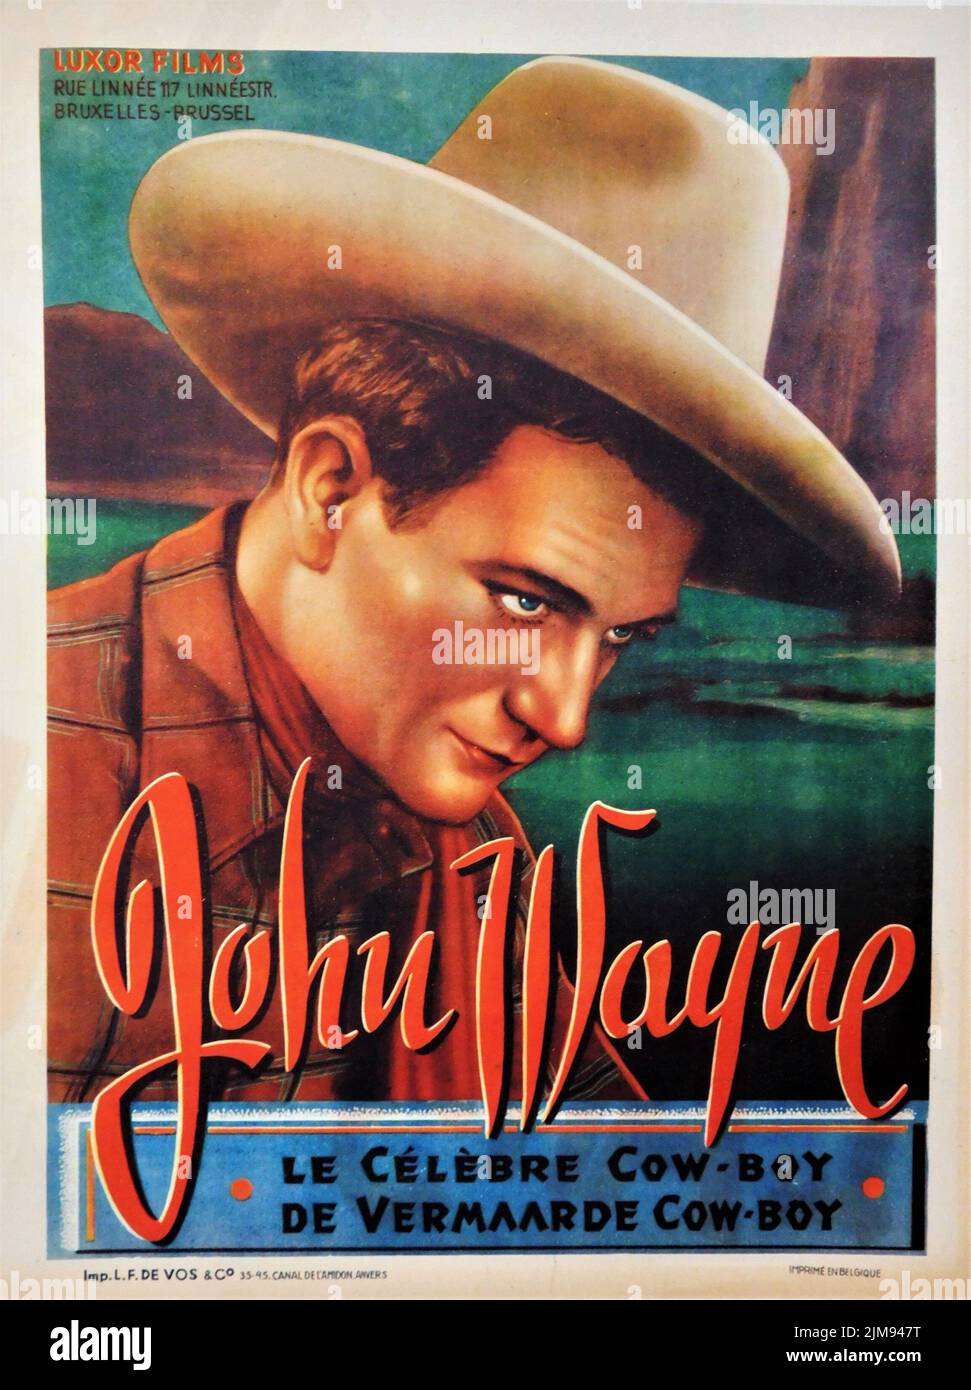 JOHN WAYNE Portrait en tant que cow-boy 1945 affiche belge pour Luxor films Banque D'Images